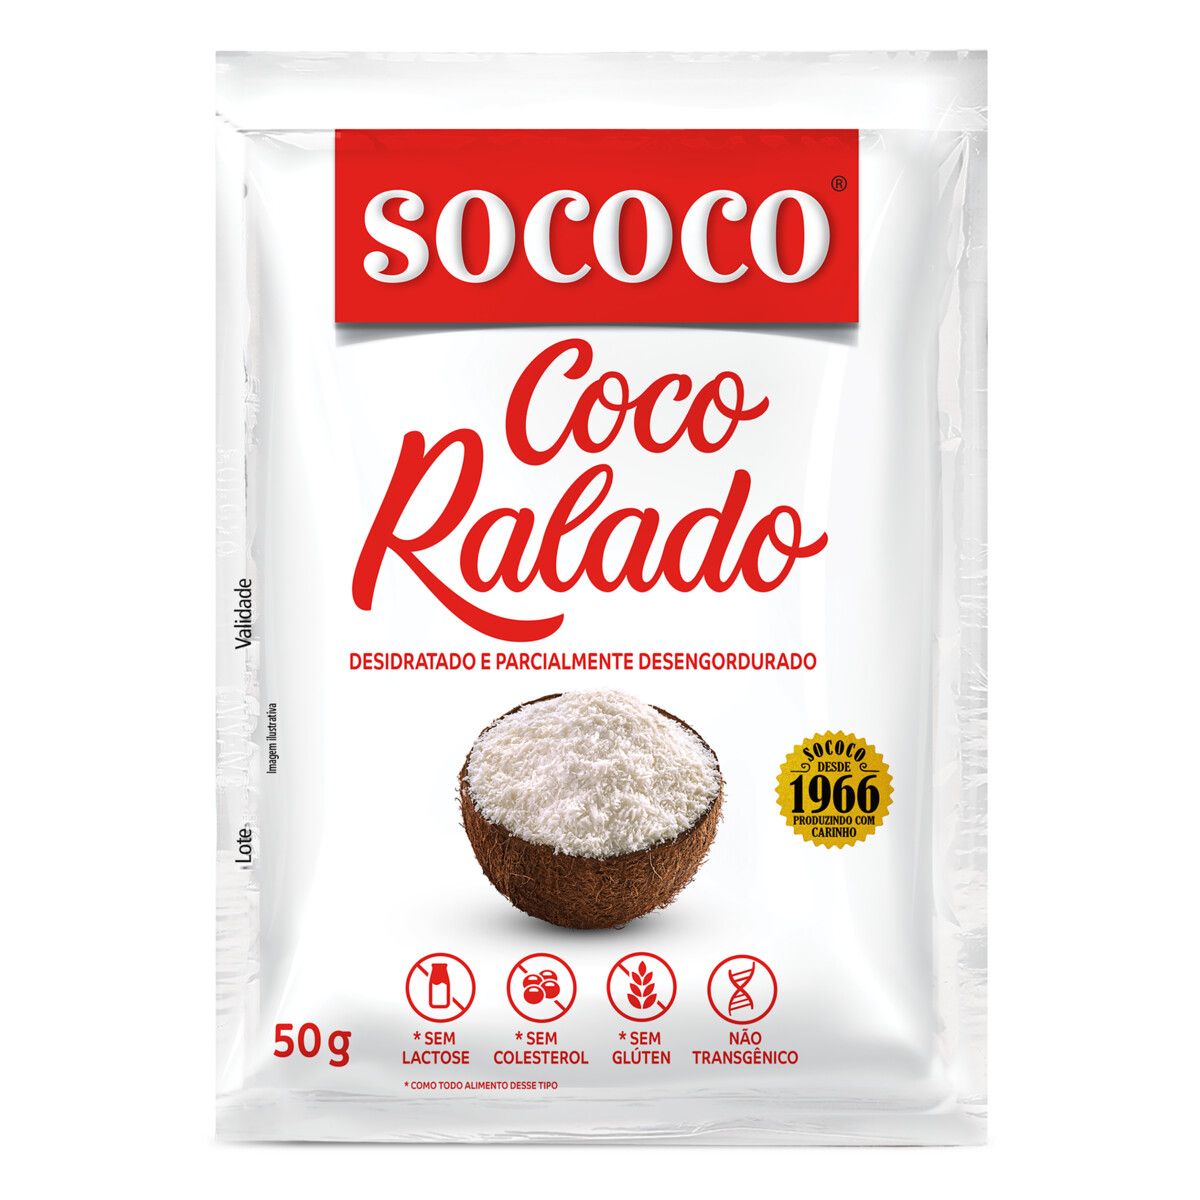 Coco Ralado Desidratado Sococo Pacote 50g image number 0